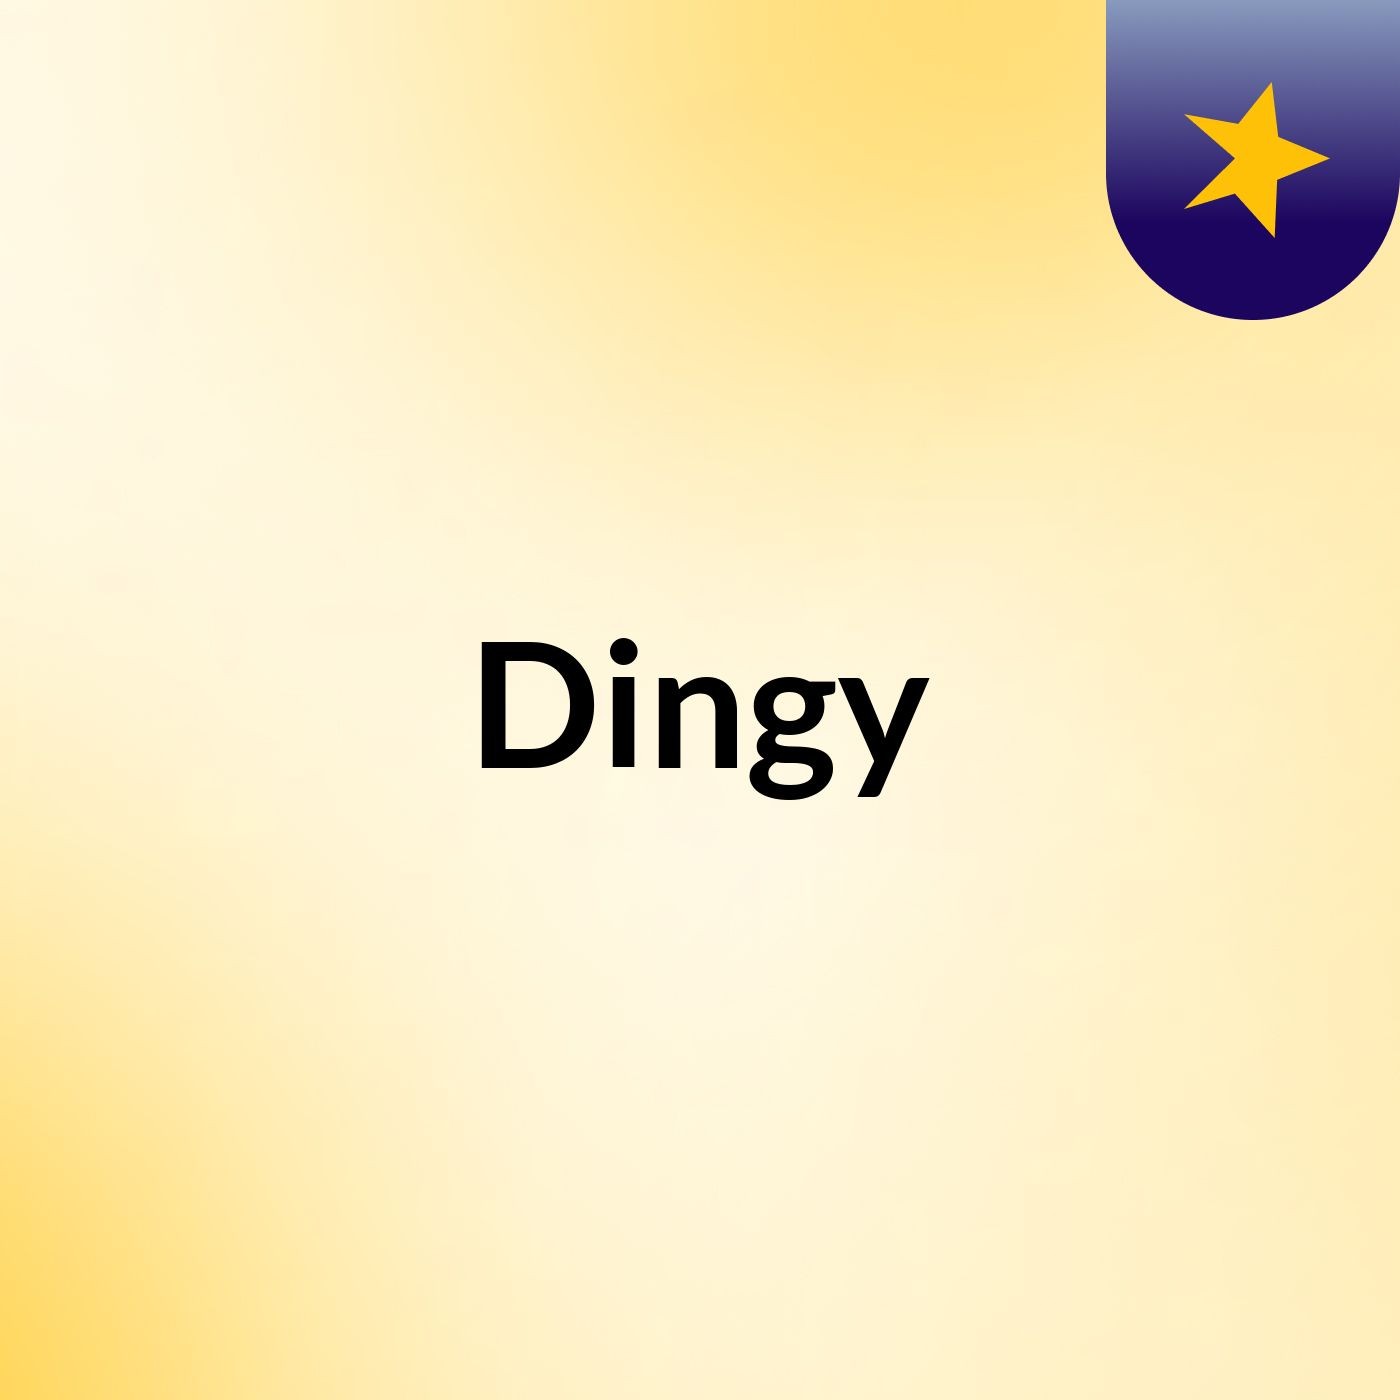 Dingy